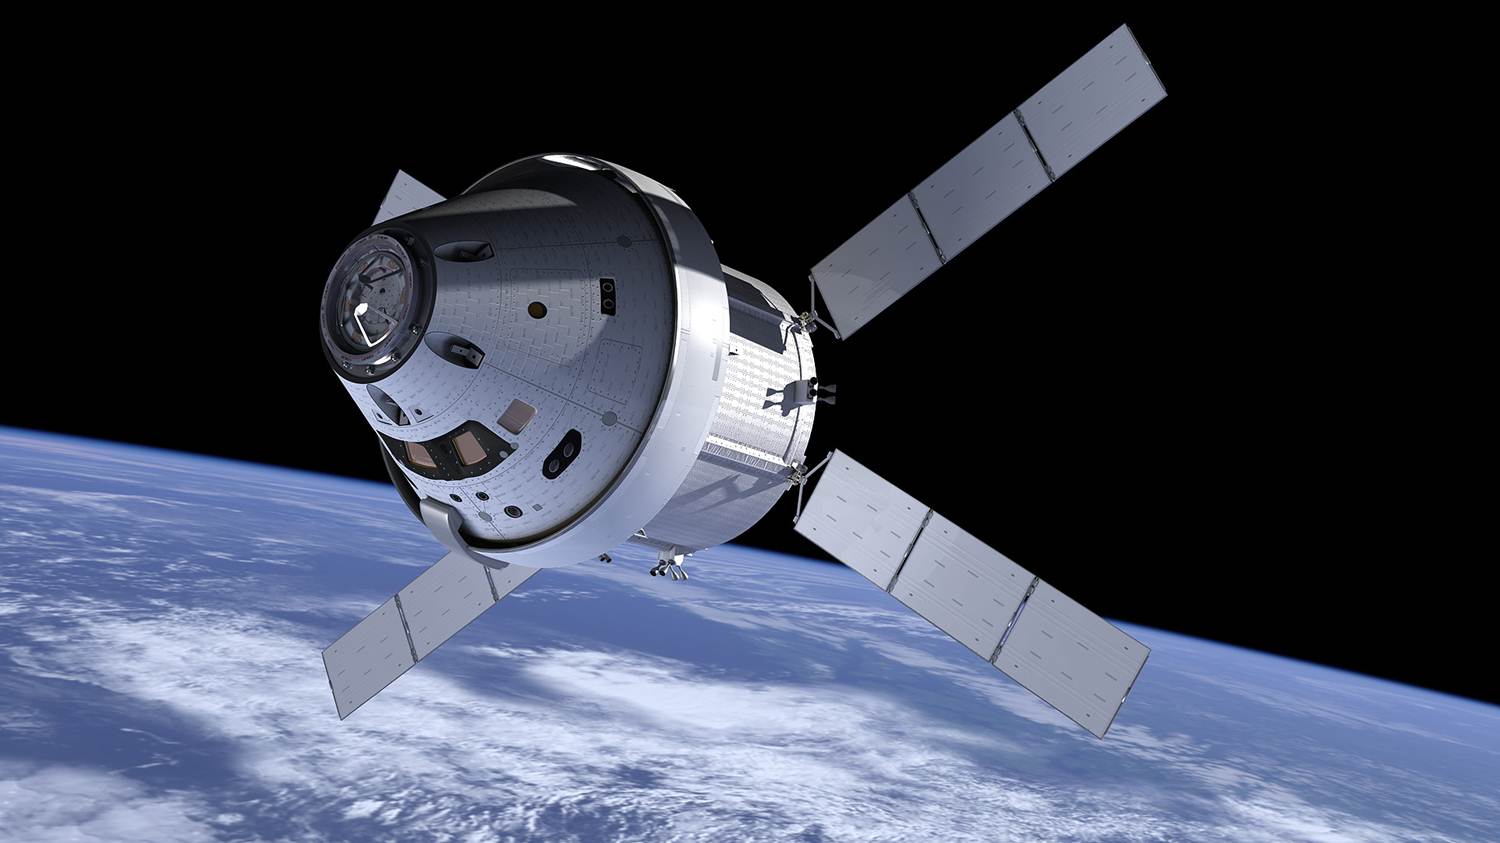 Se a NASA decide usar a privada foguete na próxima missão à Lua, isso vai mudar toda a indústria espacial